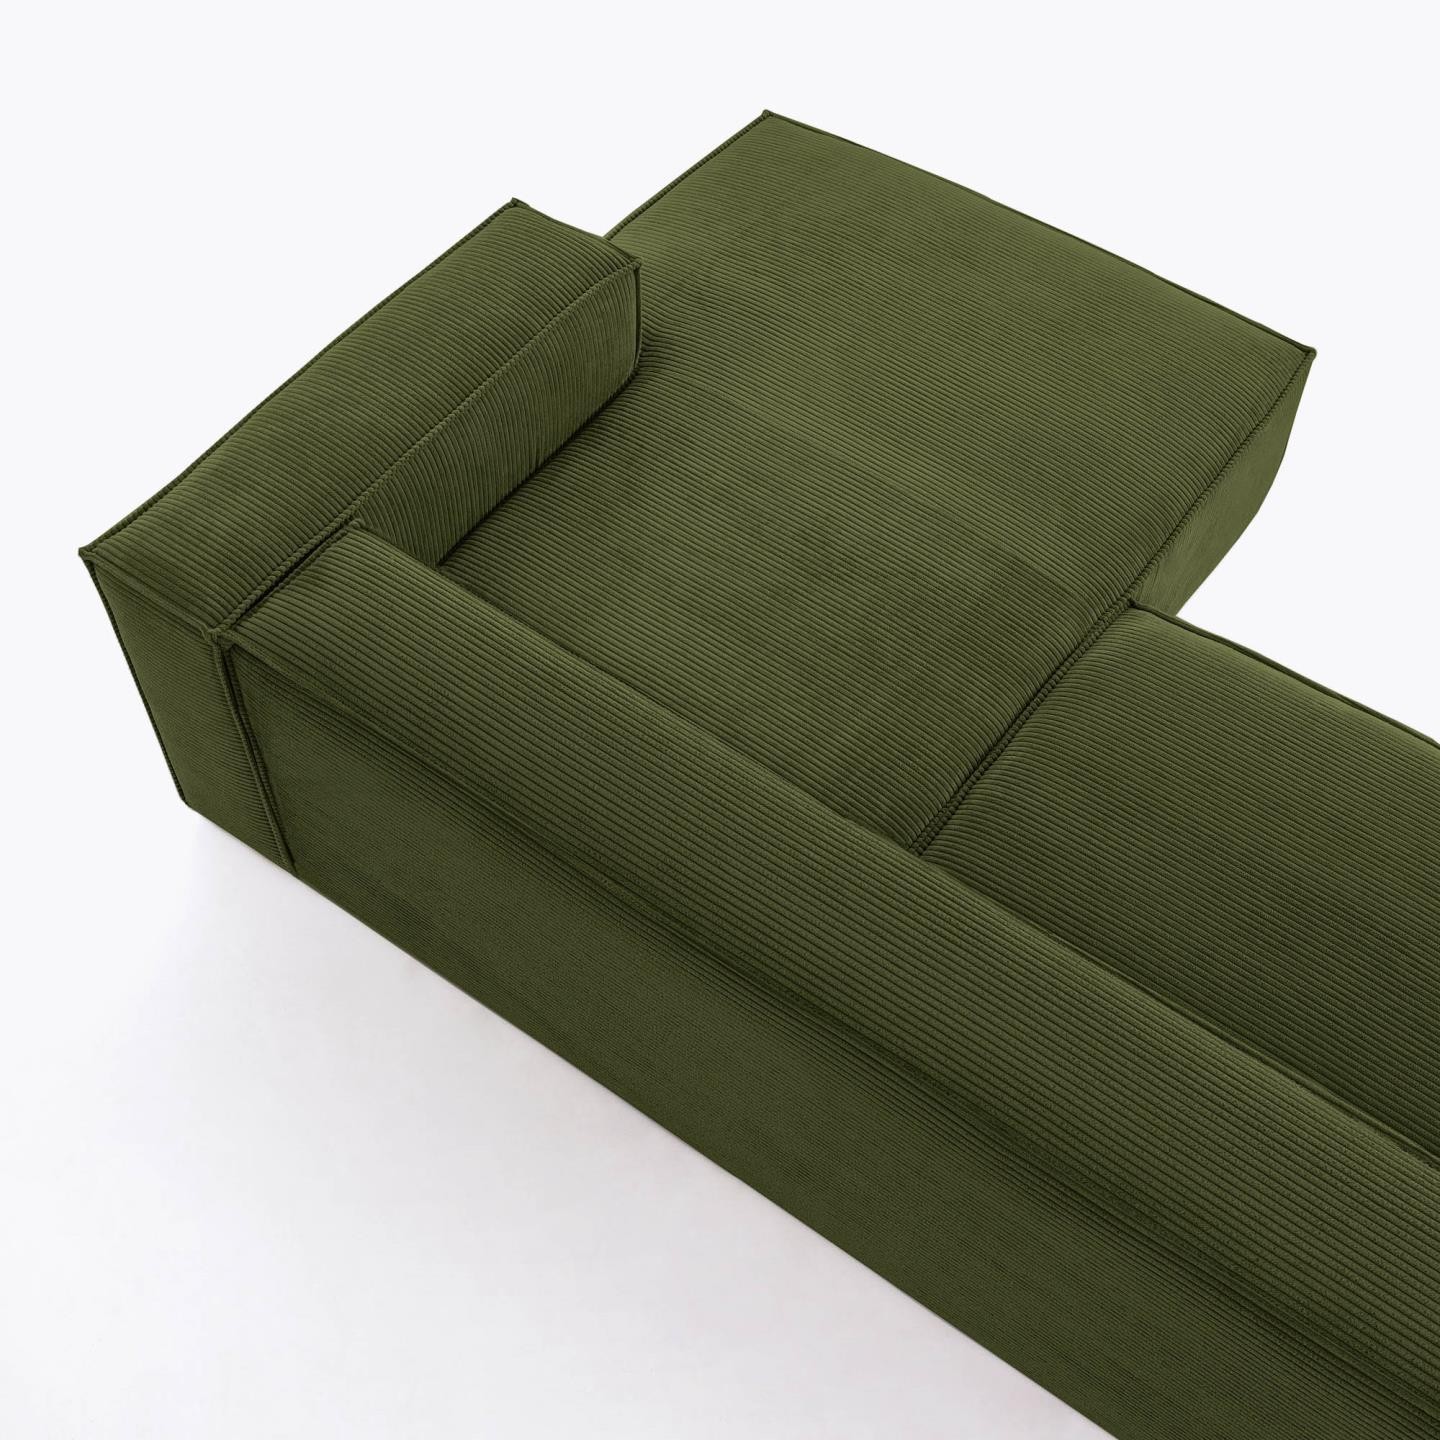 Sofa Blok 2-osobowa z szezlongiem prawostronnym, zielona